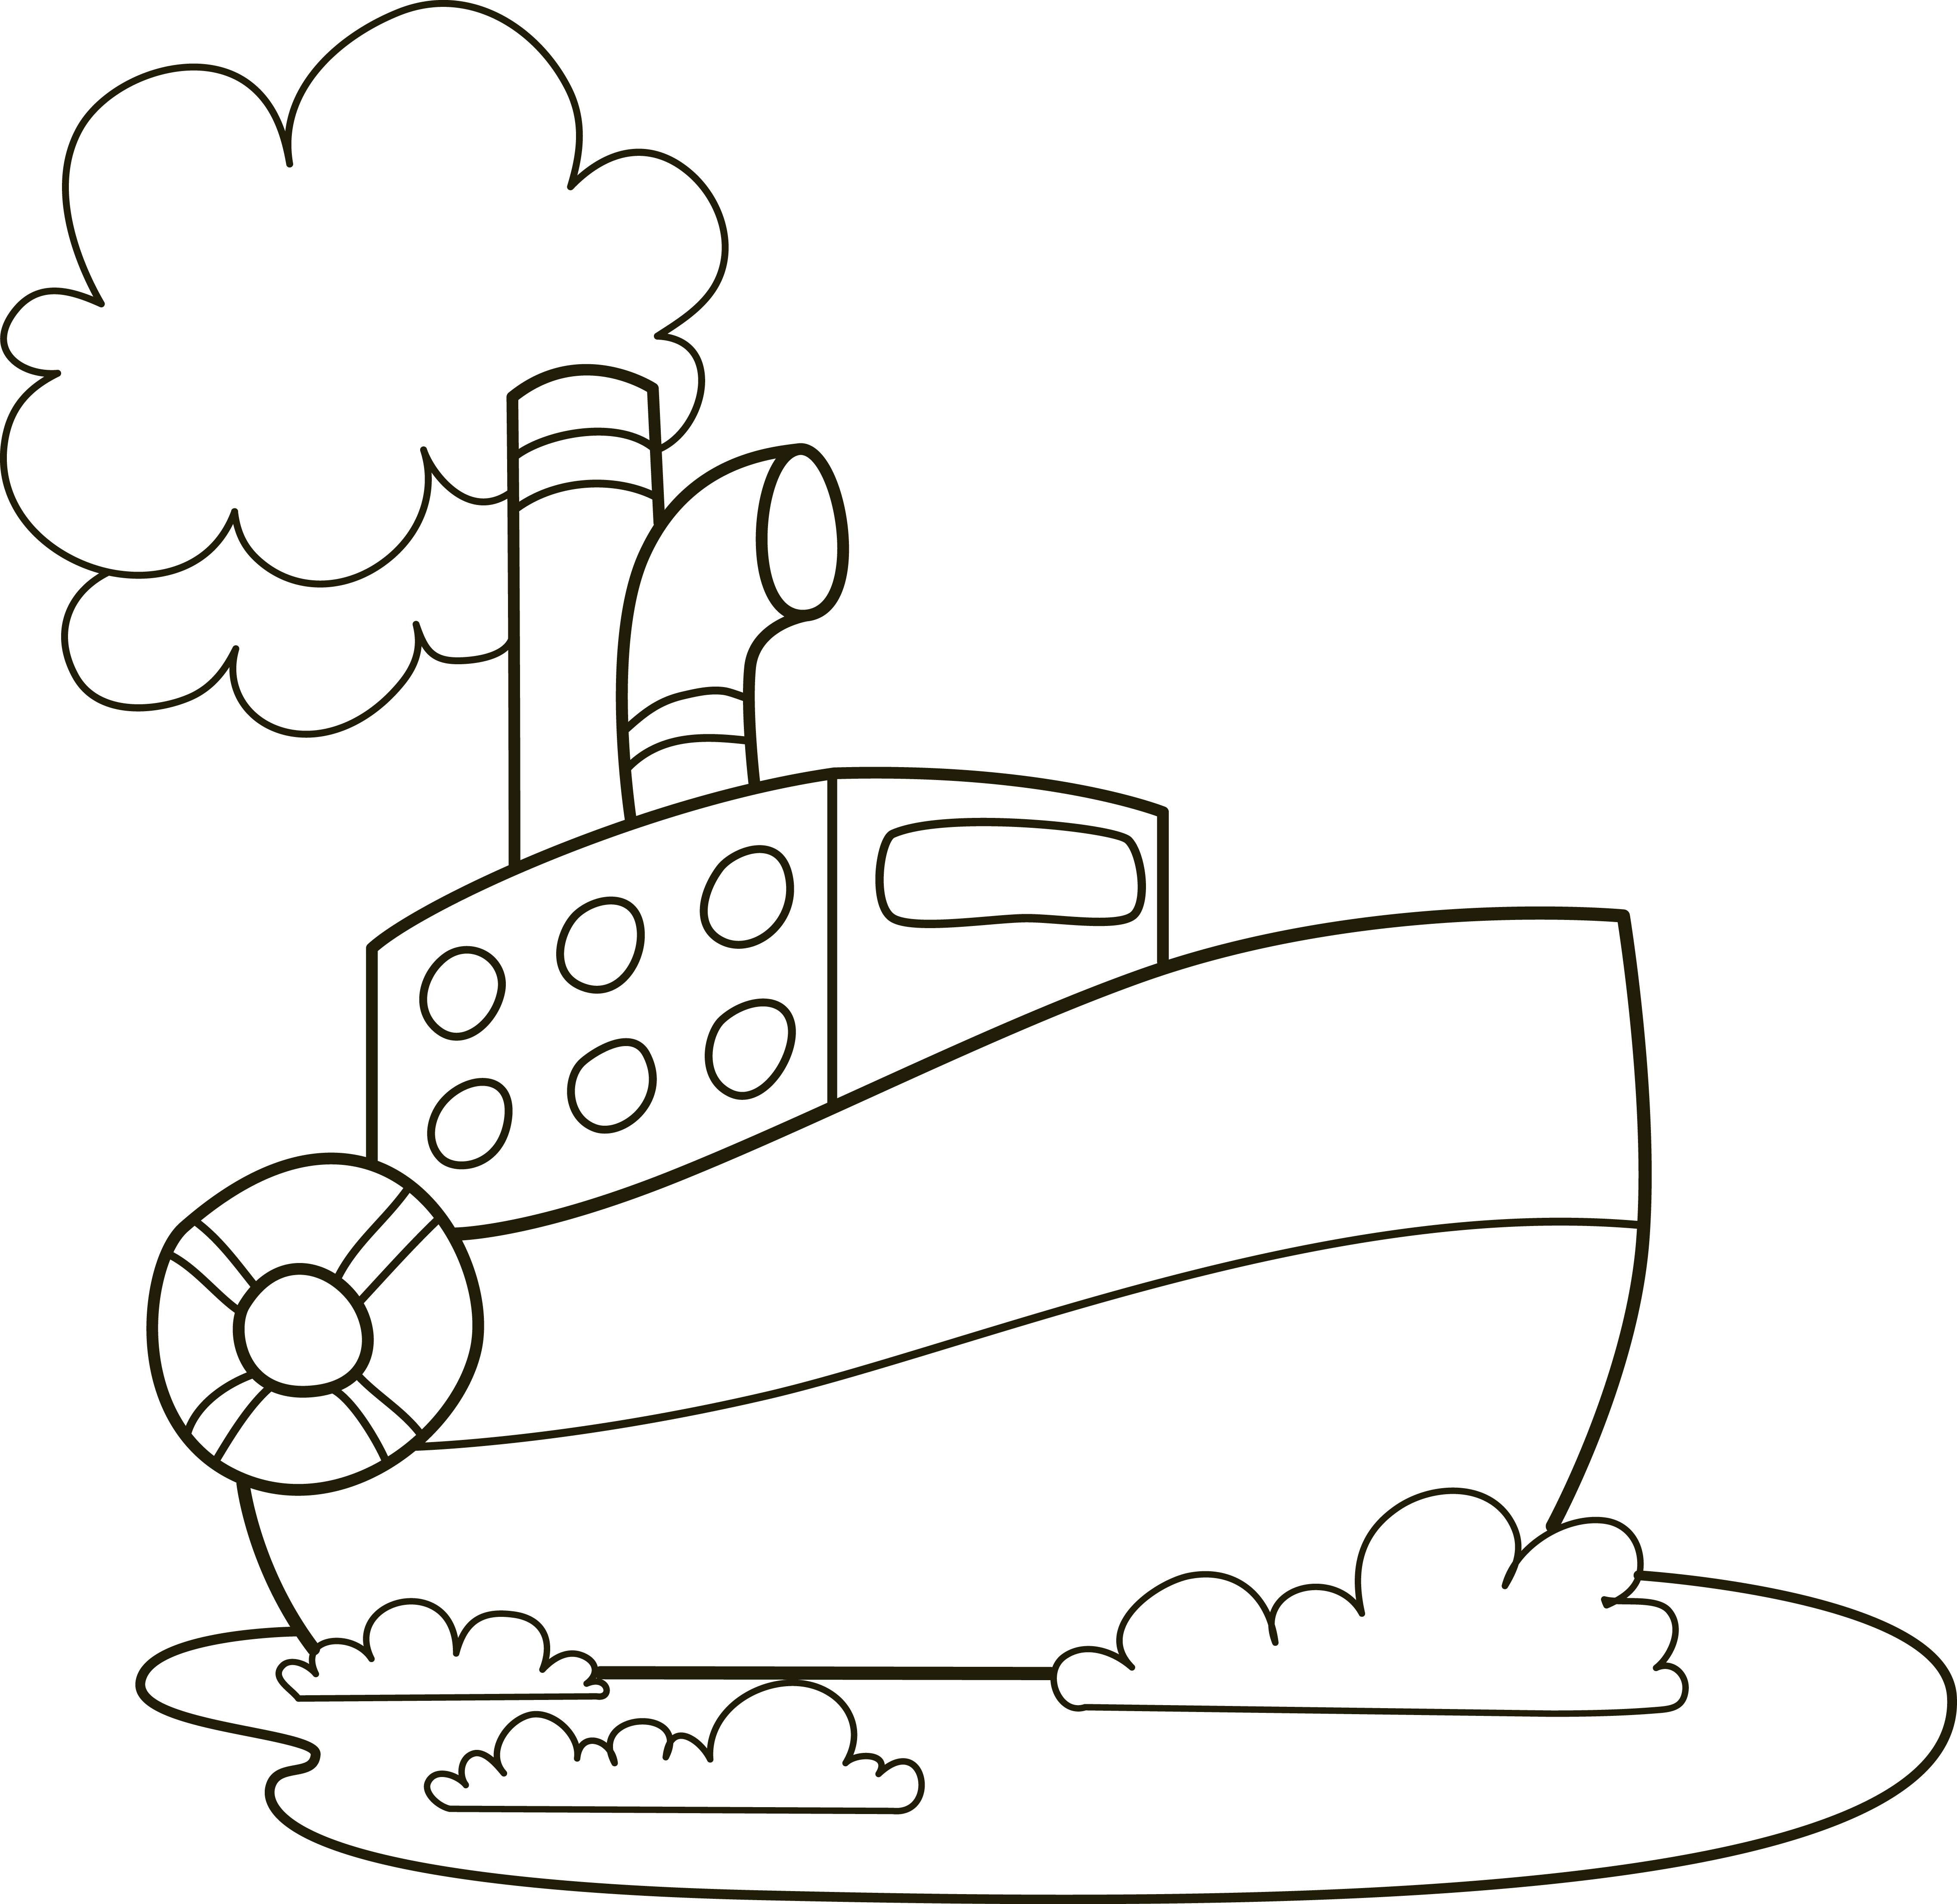 Раскраска корабль теплоход с облаком пара из трубы формата А4 в высоком качестве